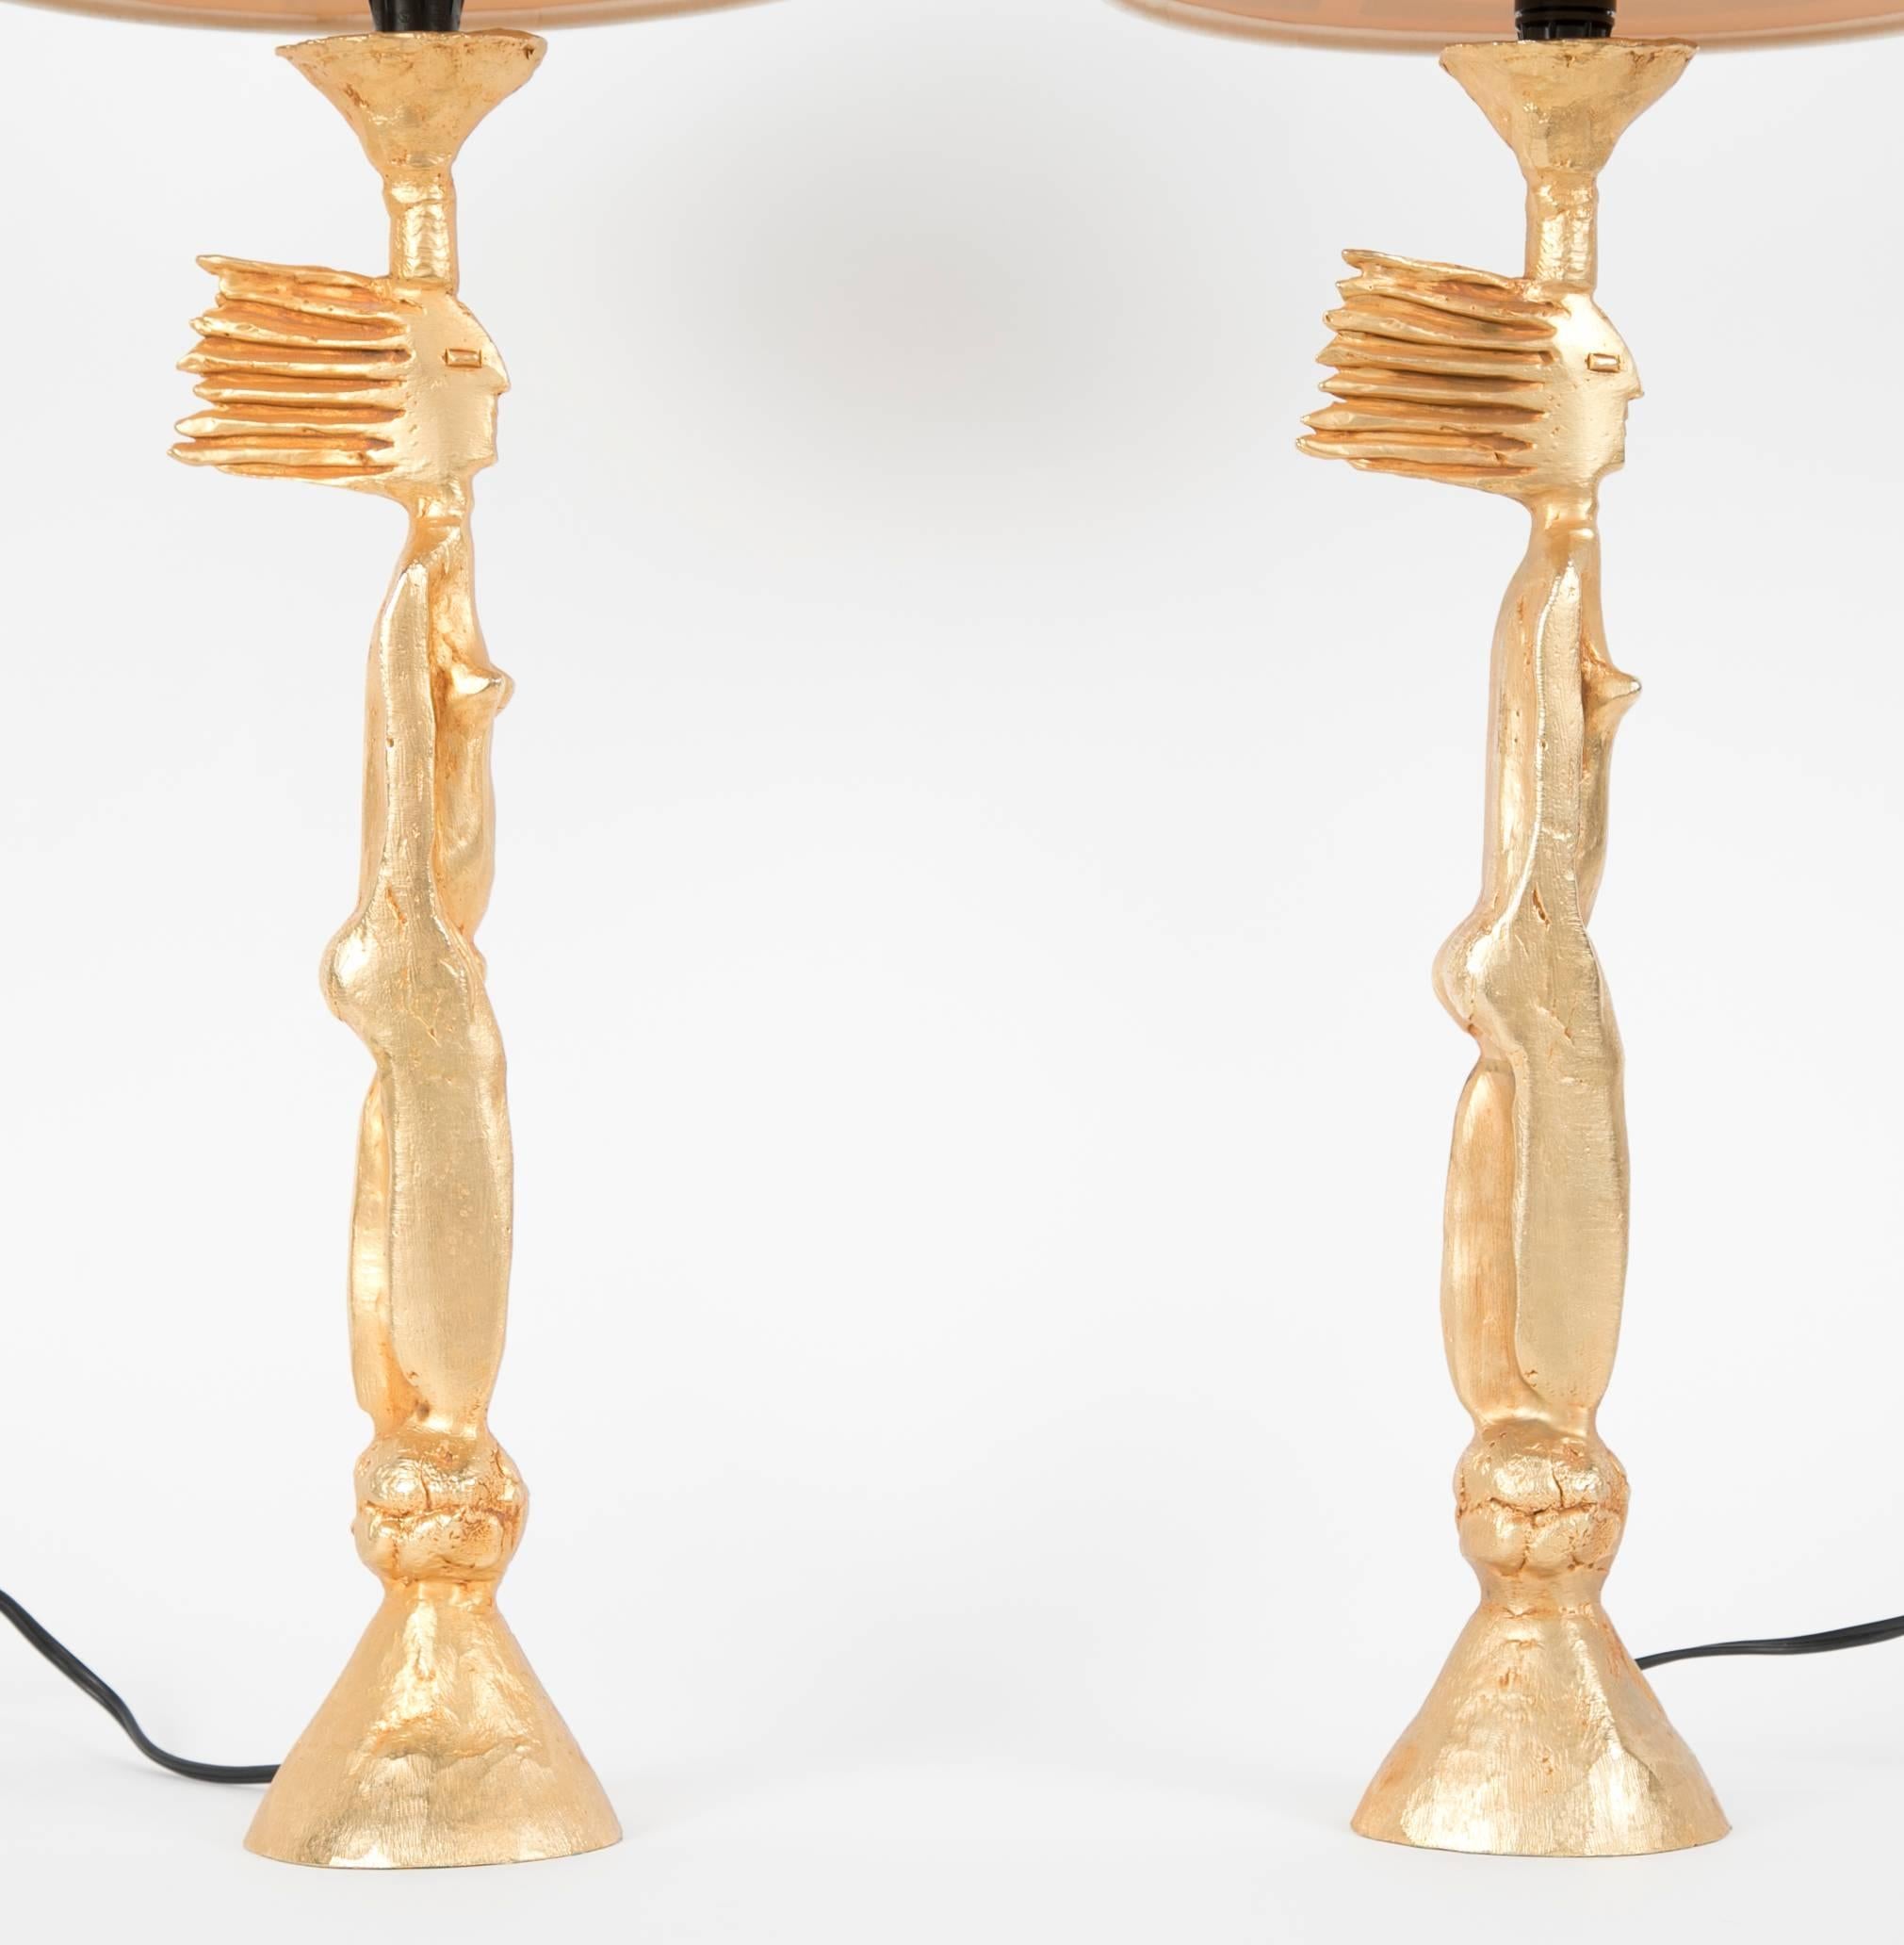 Ein zusammengehöriges Paar vergoldeter Metalllampen mit Darstellungen nackter Frauen von Pierre Casenove. Die Lampen haben ihre originalen Schirme, die allerdings einige Altersspuren aufweisen. Die eine Lampe hat mehr von ihrer ursprünglichen